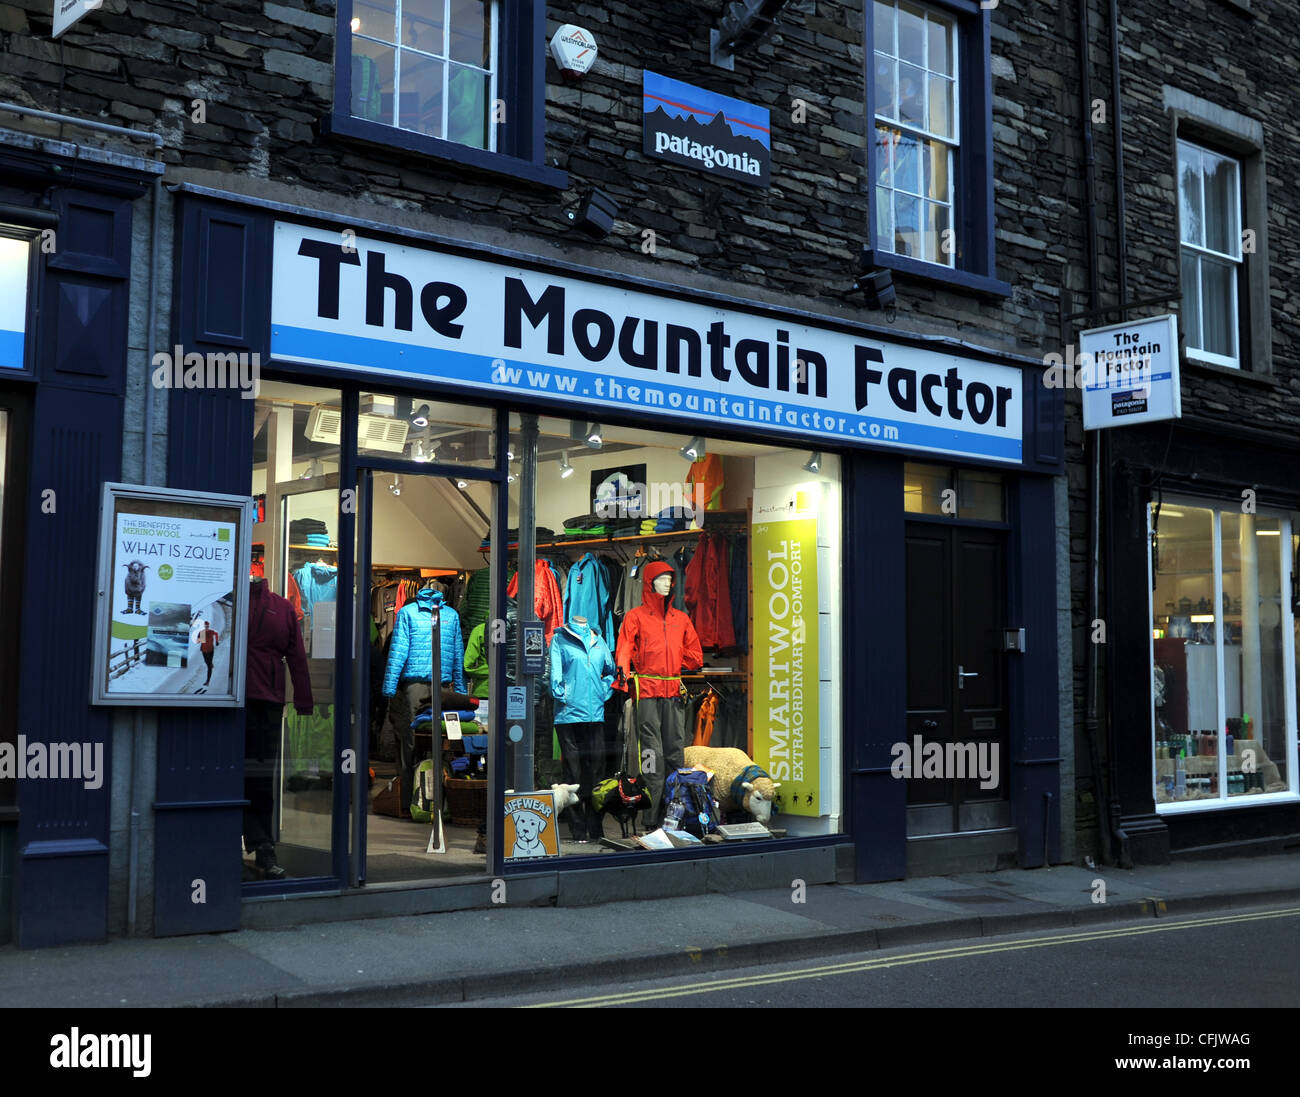 El factor de la montaña tienda de ropa de aventura al aire libre en Ambleside, en el distrito de Los Lagos de Cumbria Reino Unido Foto de stock